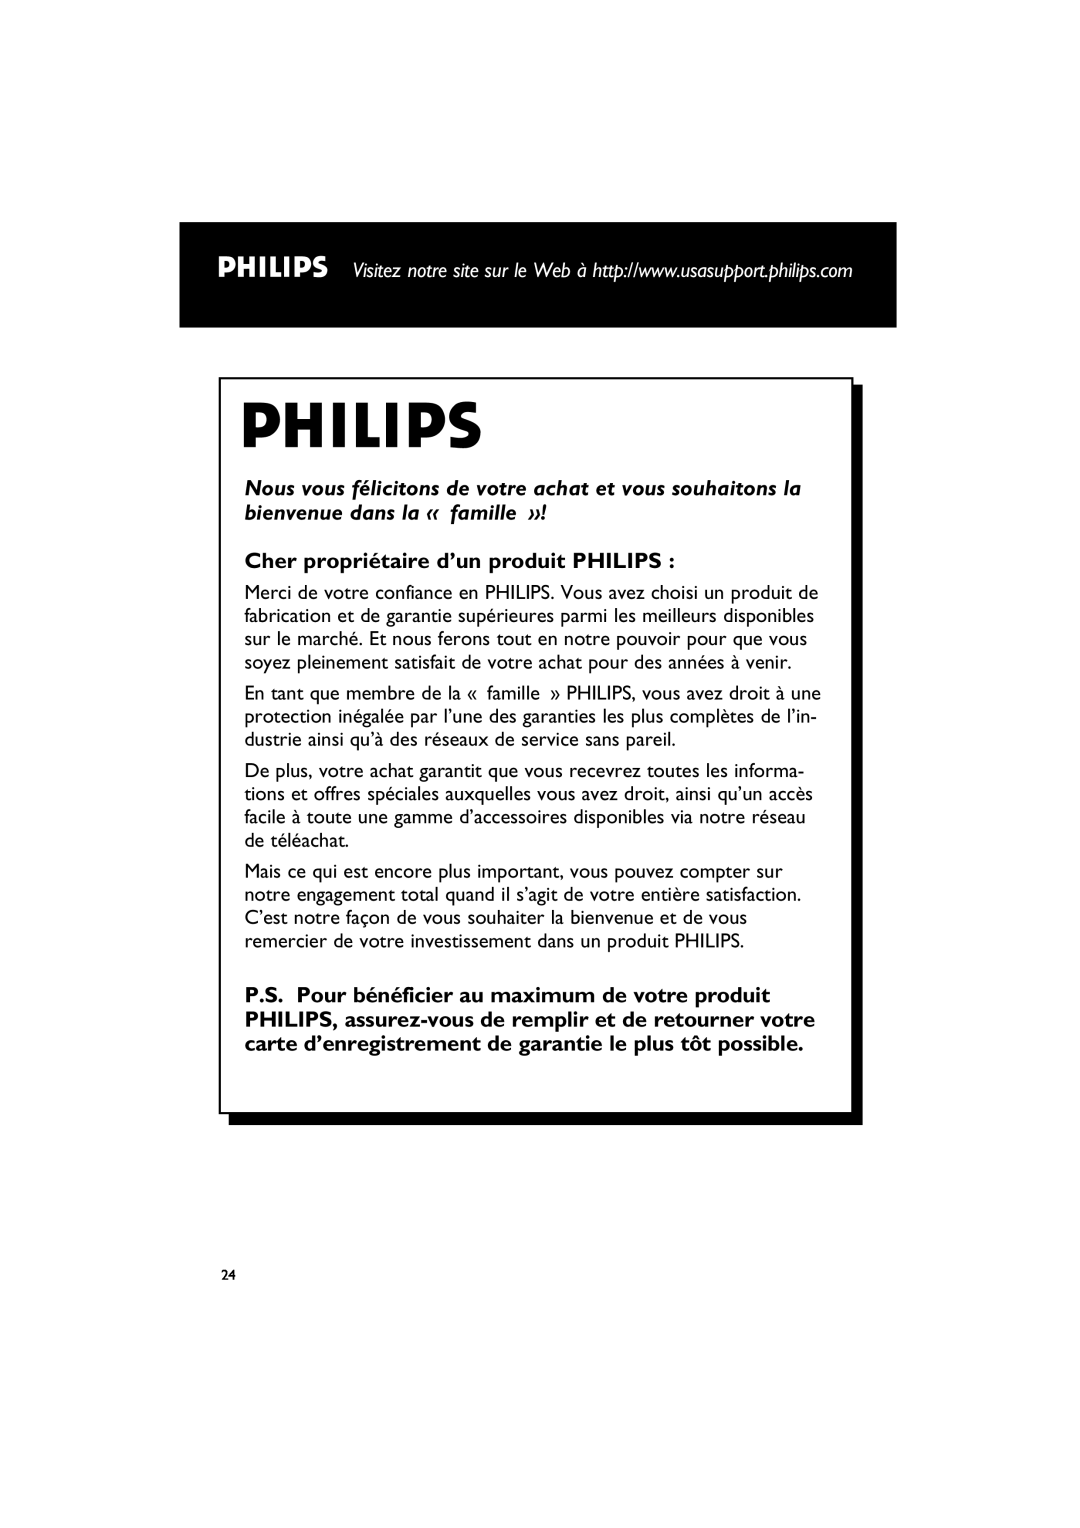 Philips MCM195 owner manual Cher propriétaire d’un produit PHILIPS 